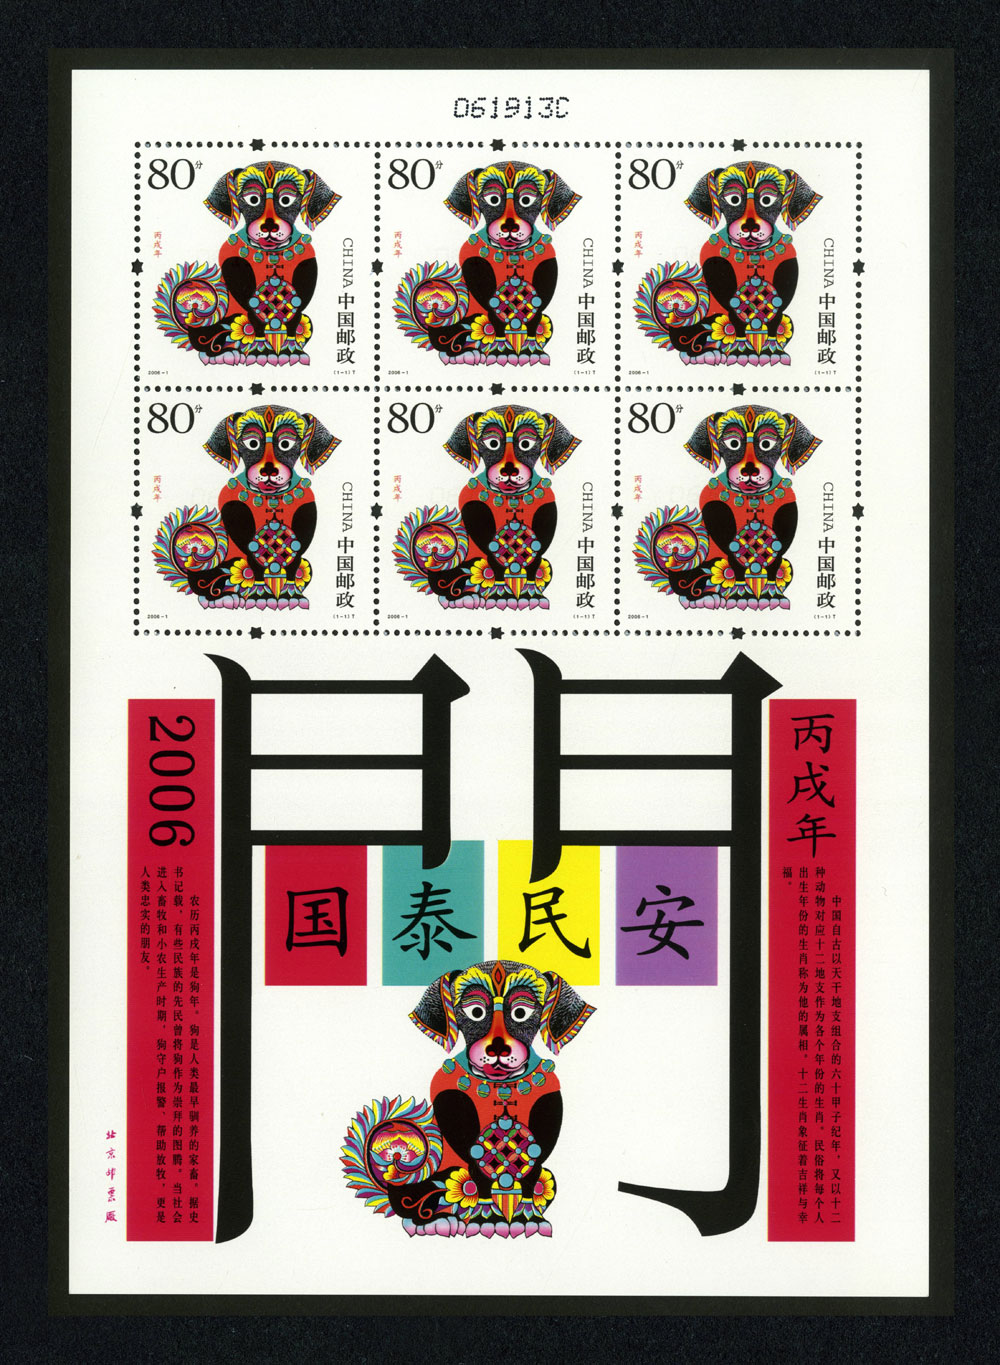 2006年狗生肖邮票《丙戌年》小版票